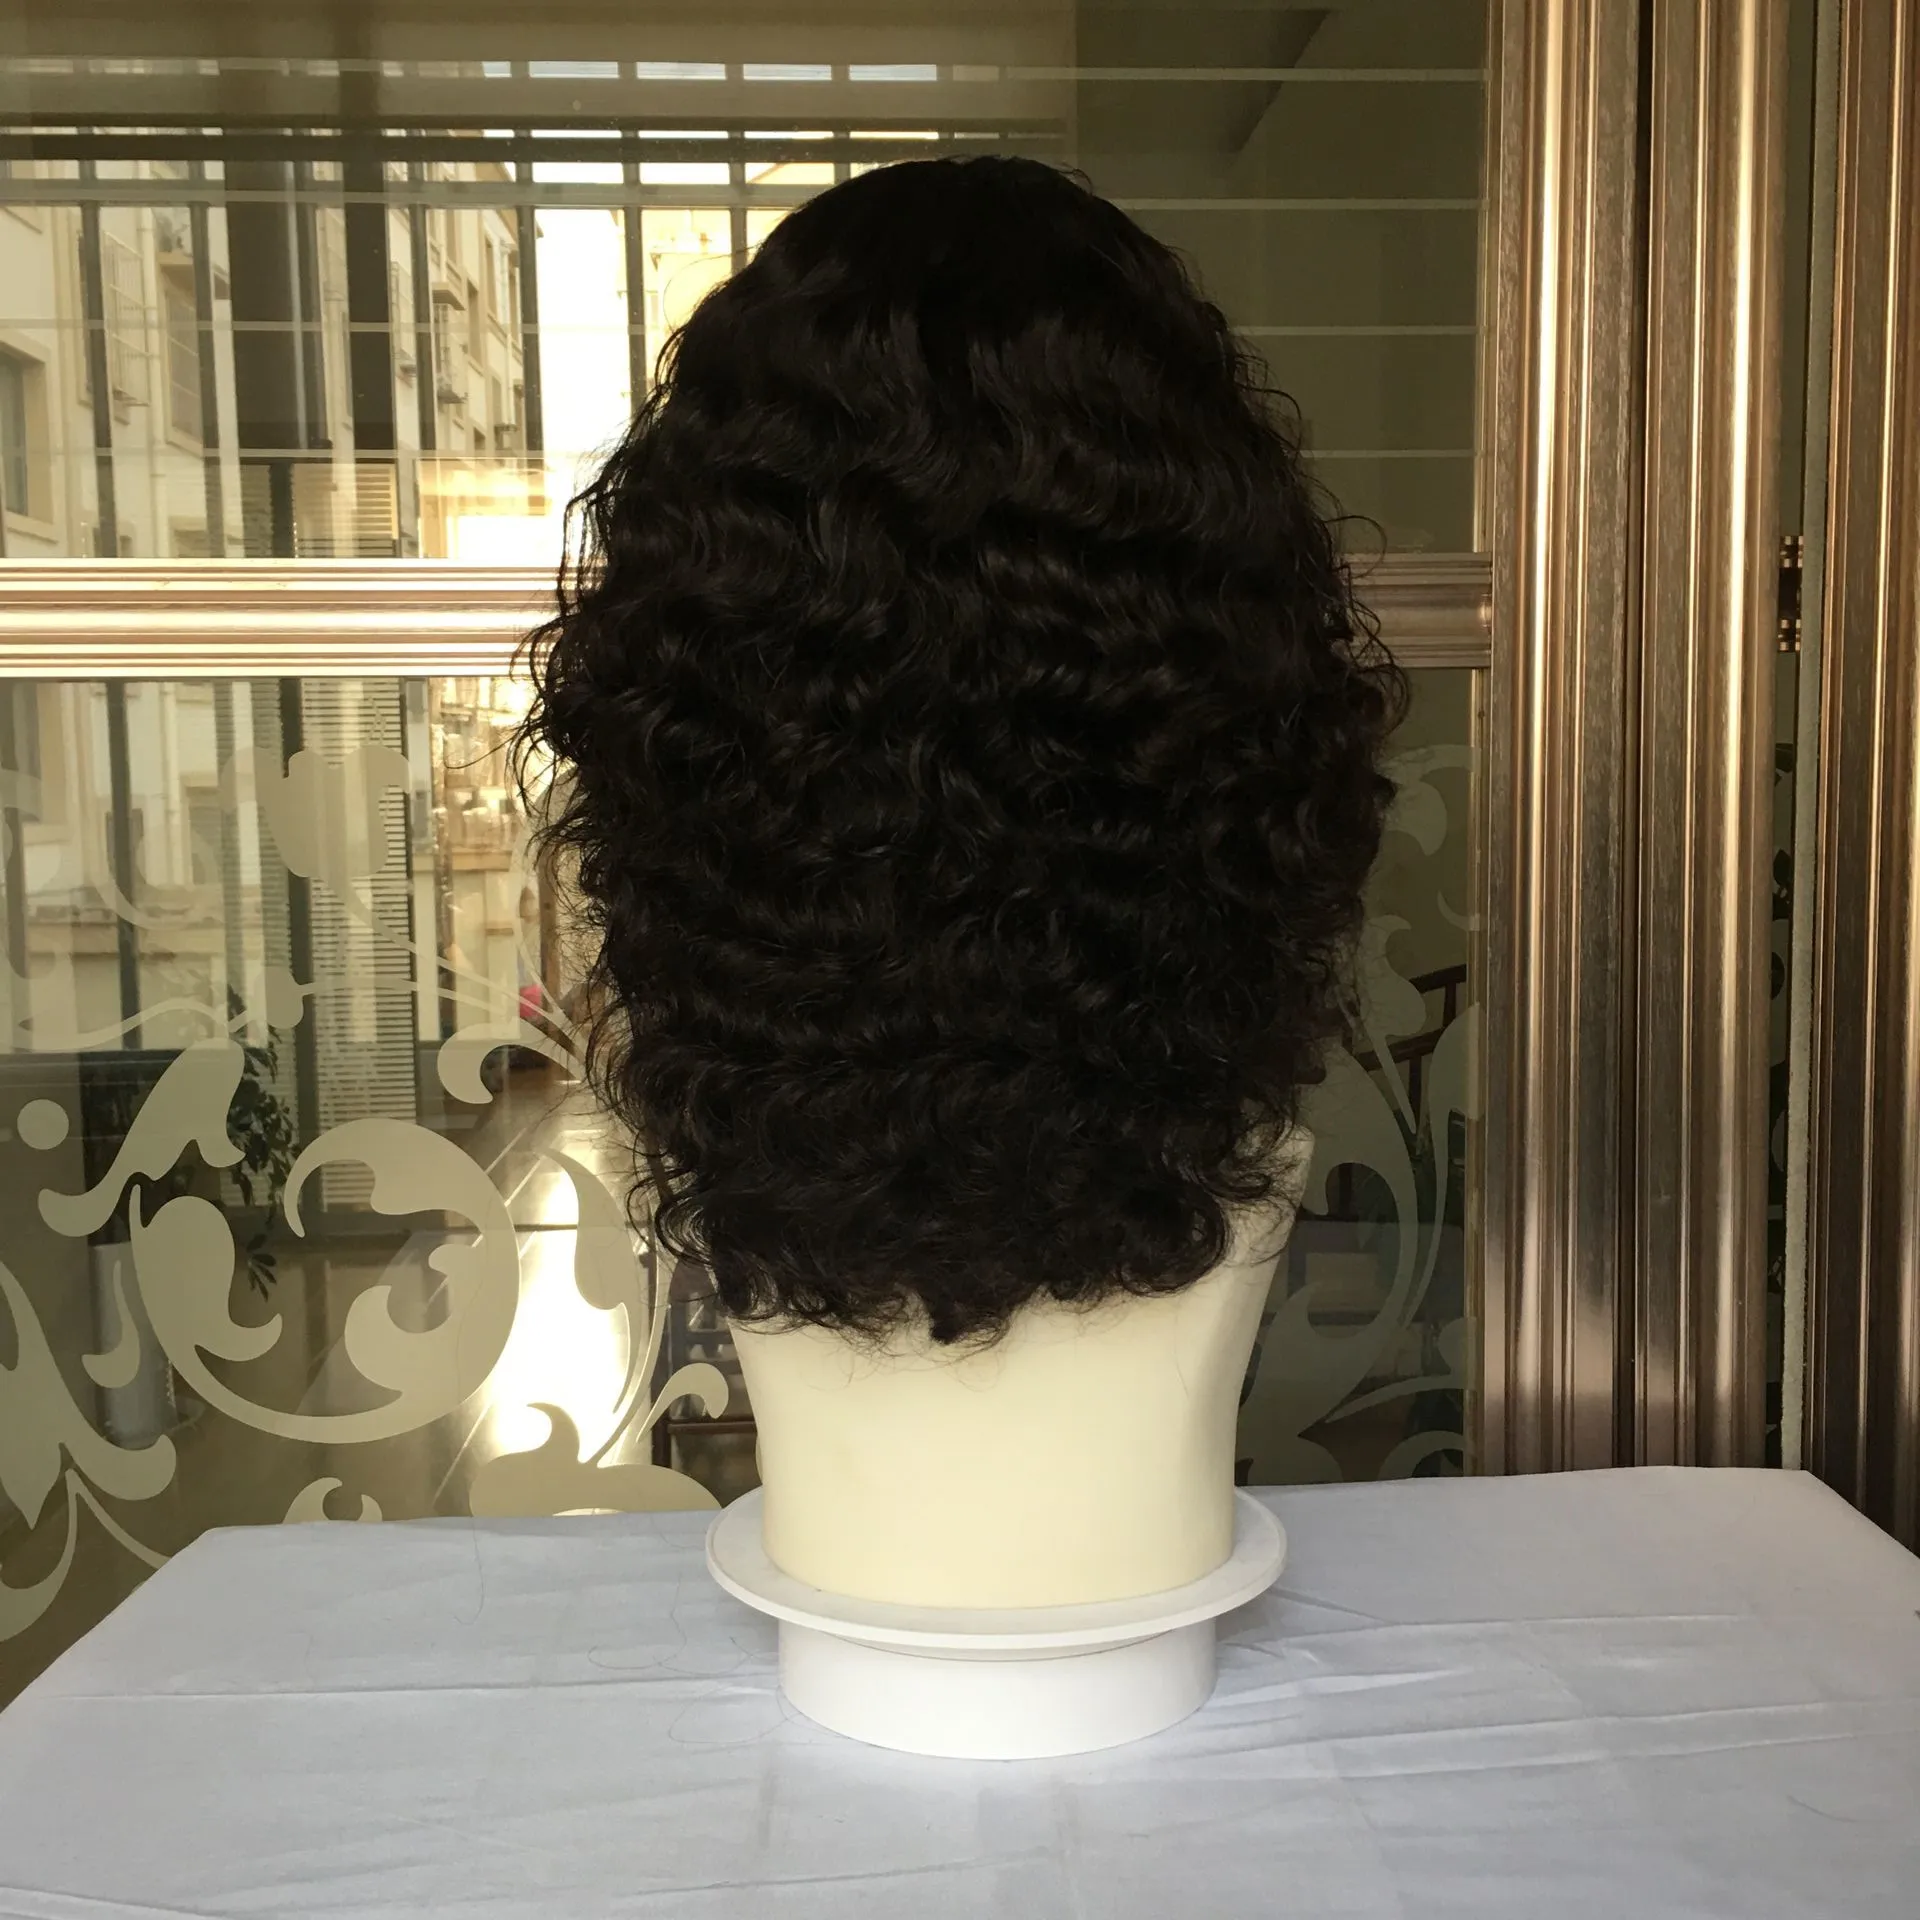 7 дней доставки Tsingtaowigs на заказ европейские необработанные волосы еврейский парик лучшие Sheitels парики